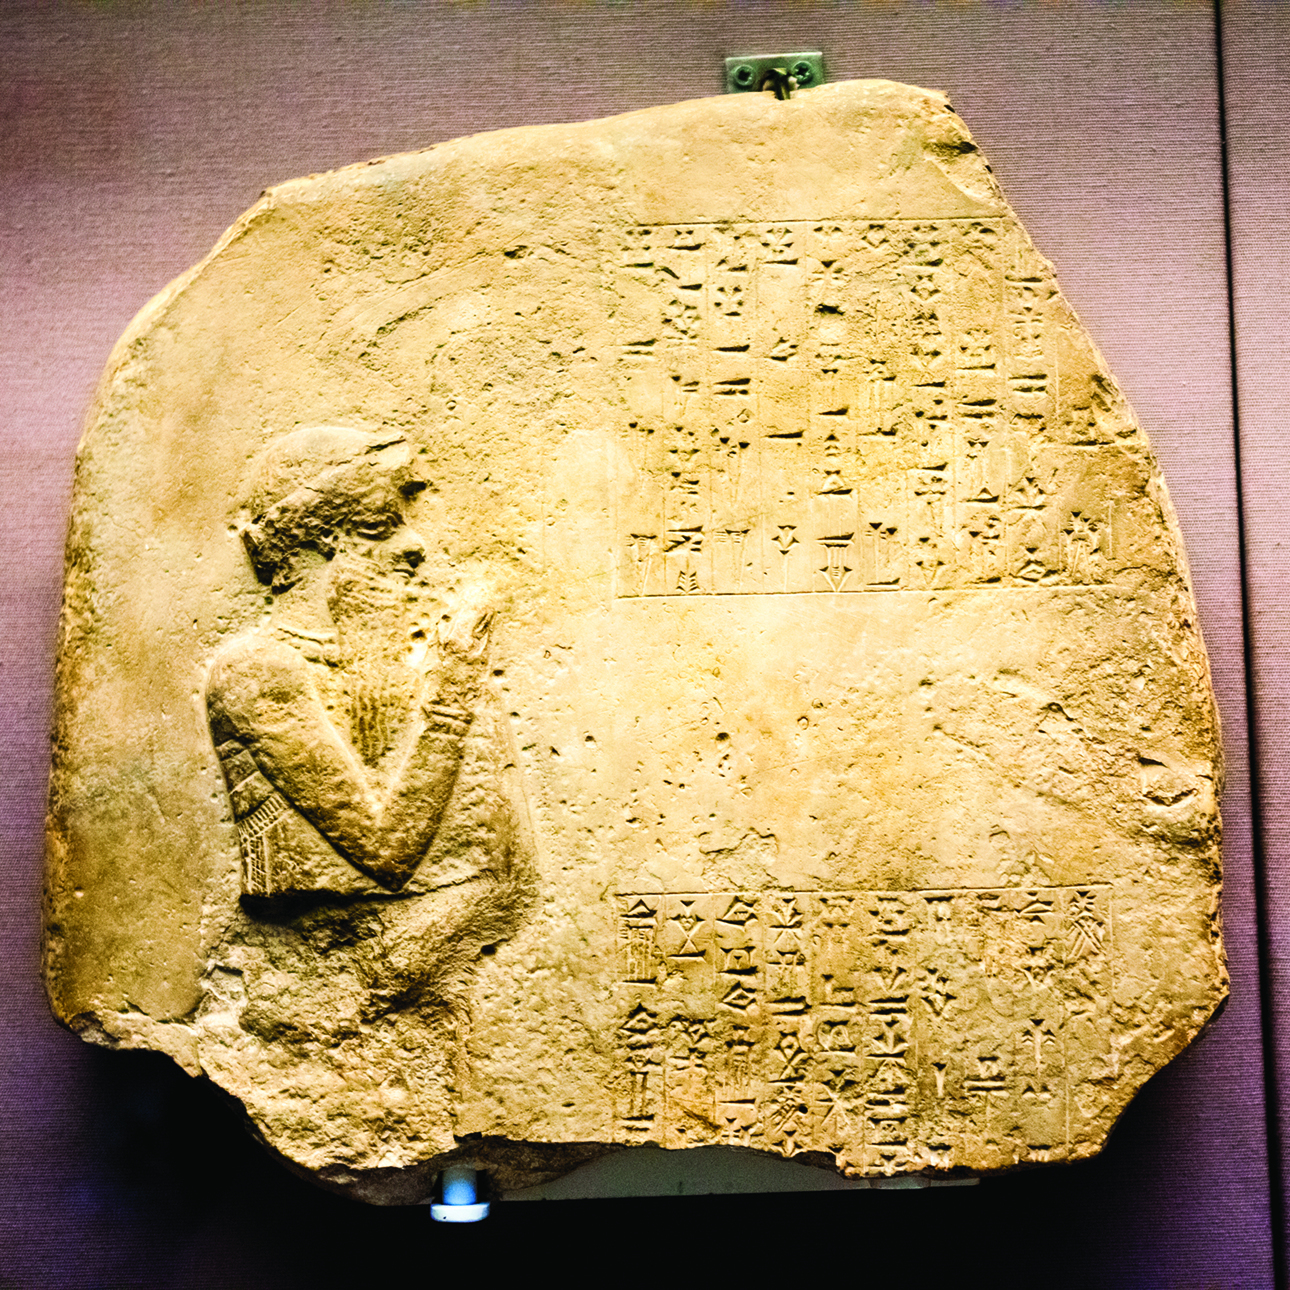 code of hammurabi tablet